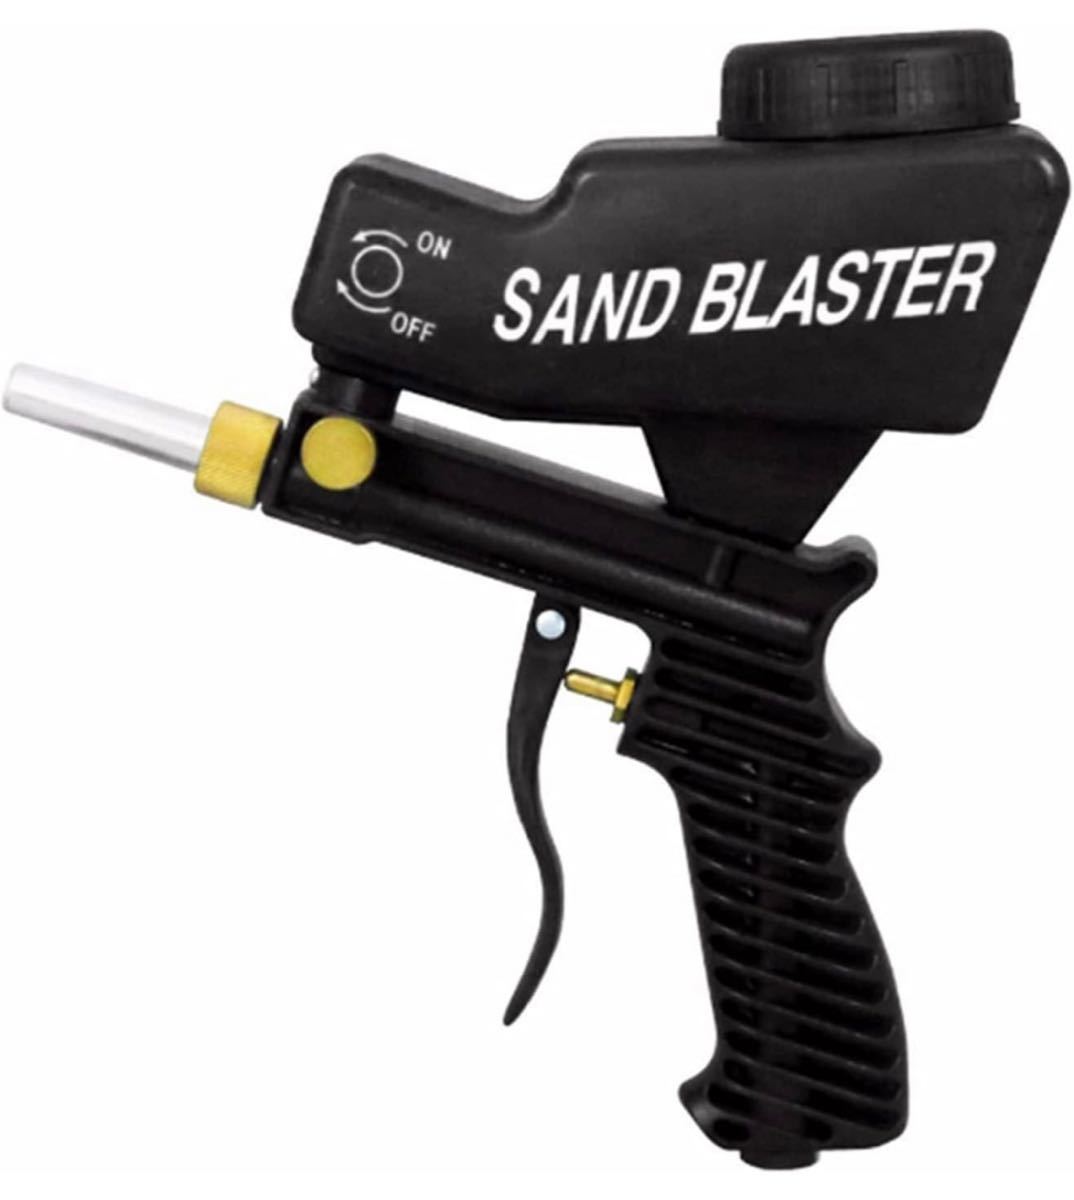  Sand blast gun Schott blast гравитационного типа удаление ржавчины песок дуть . ржавчина брать . покраска облупившийся 